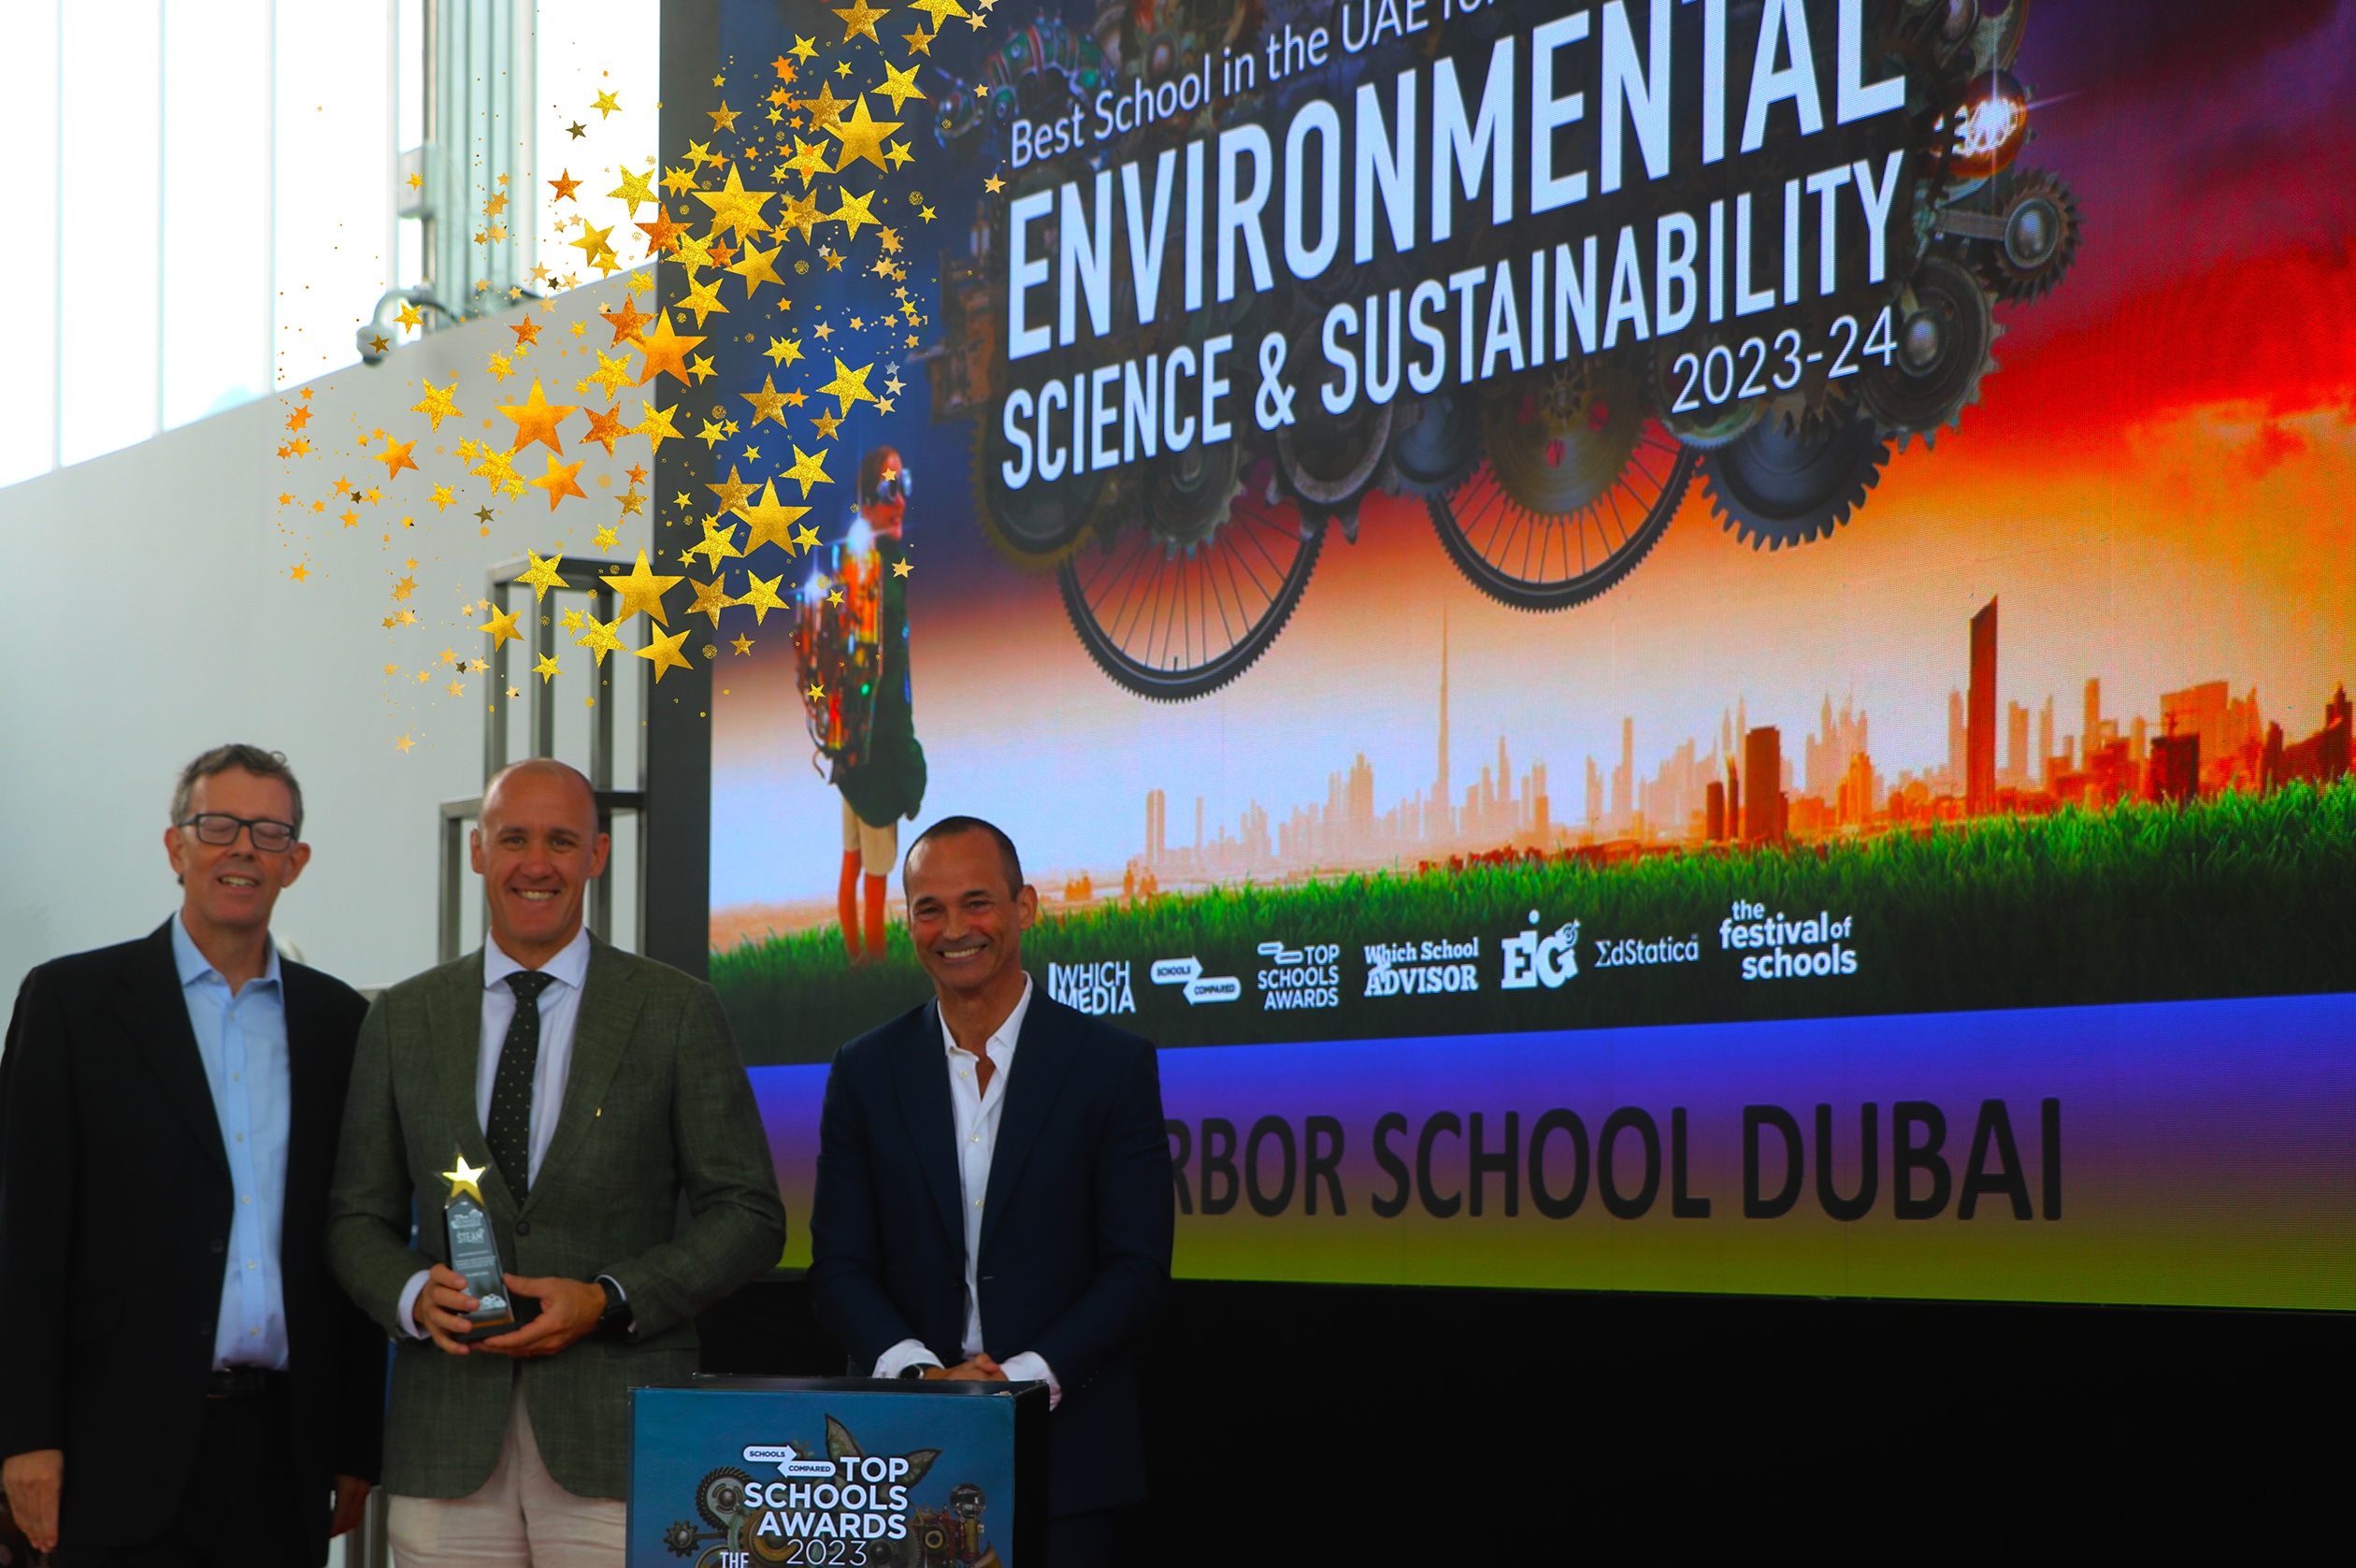 حصلت مدرسة أربور دبي على جائزة أفضل مدرسة للعلوم البيئية والاستدامة ومحو الأمية البيئية في حفل توزيع جوائز أفضل المدارس لعام 2024